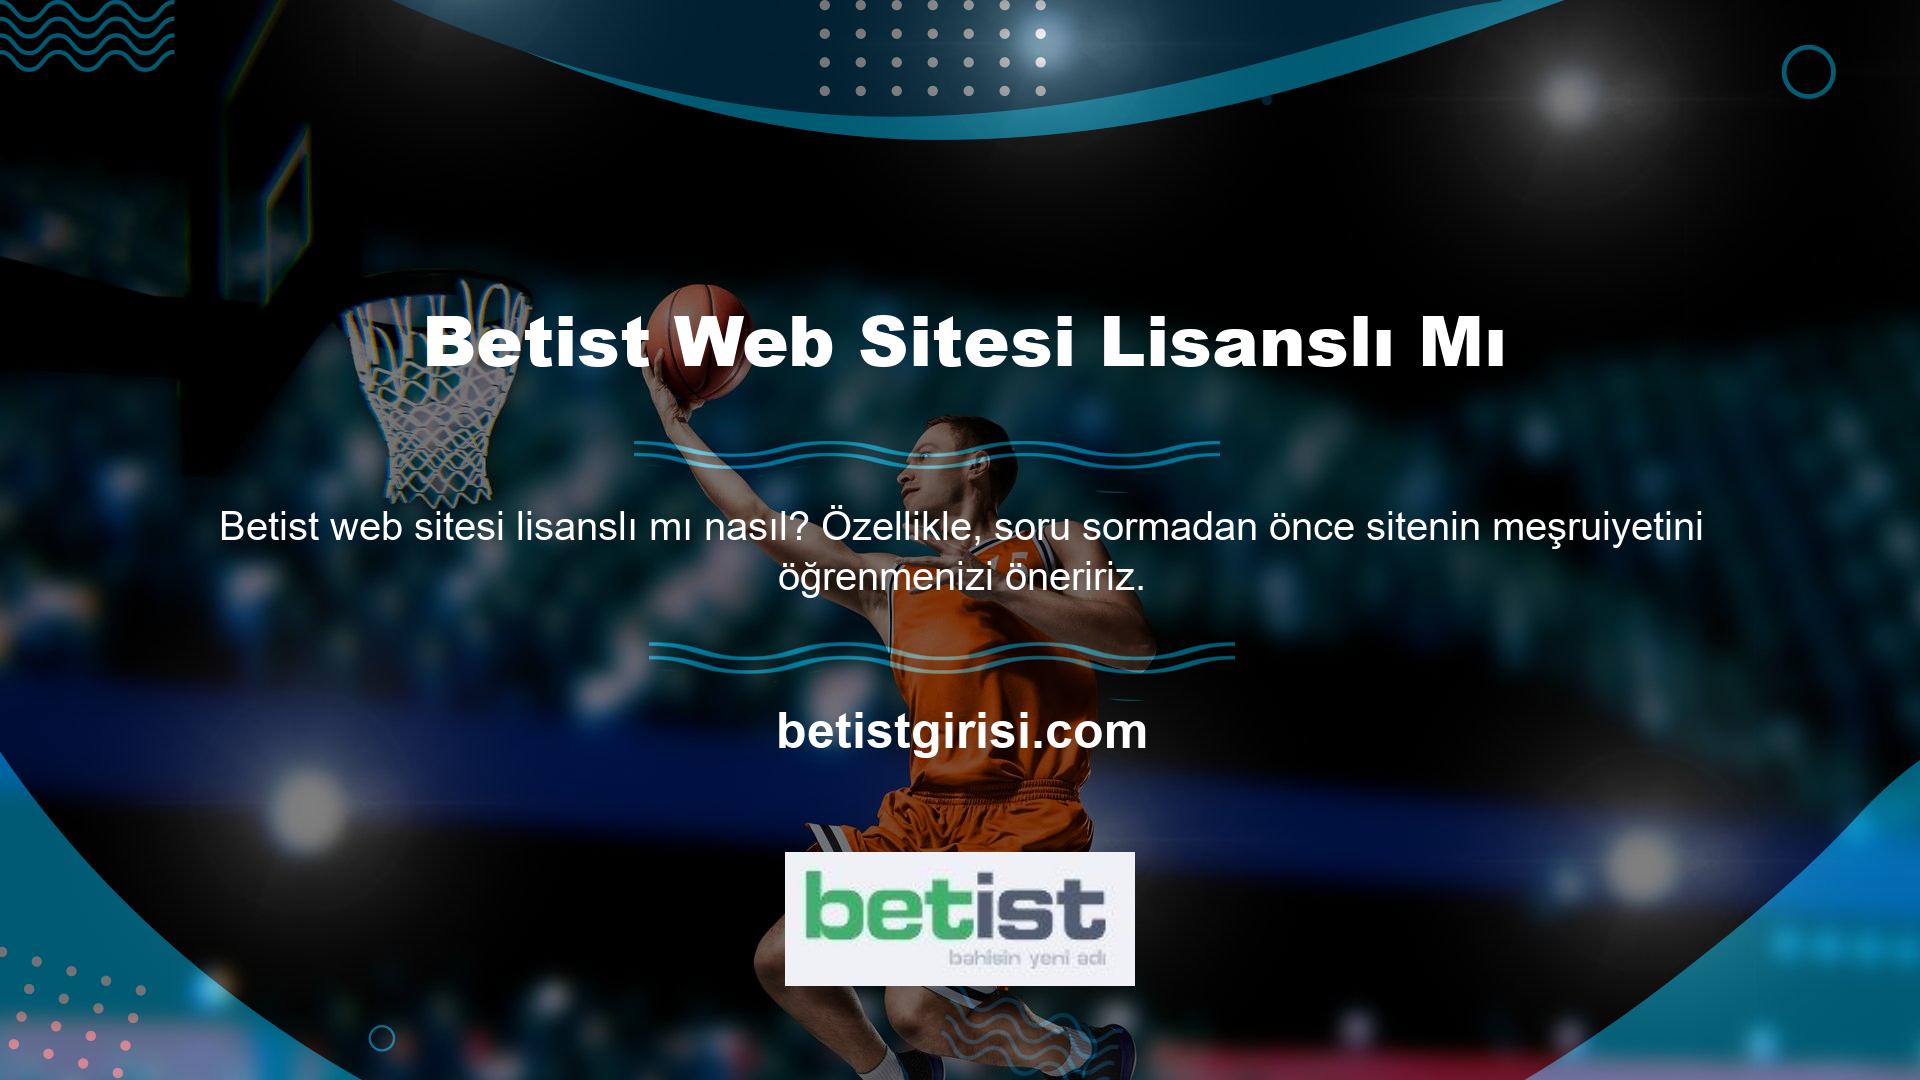 Betist web sitesi lisanslı mı? Yeni bir soru sorun ve cevabını bulmaya çalışın, tüm yasal içeriği Betist web sitesinde bulacaksınız